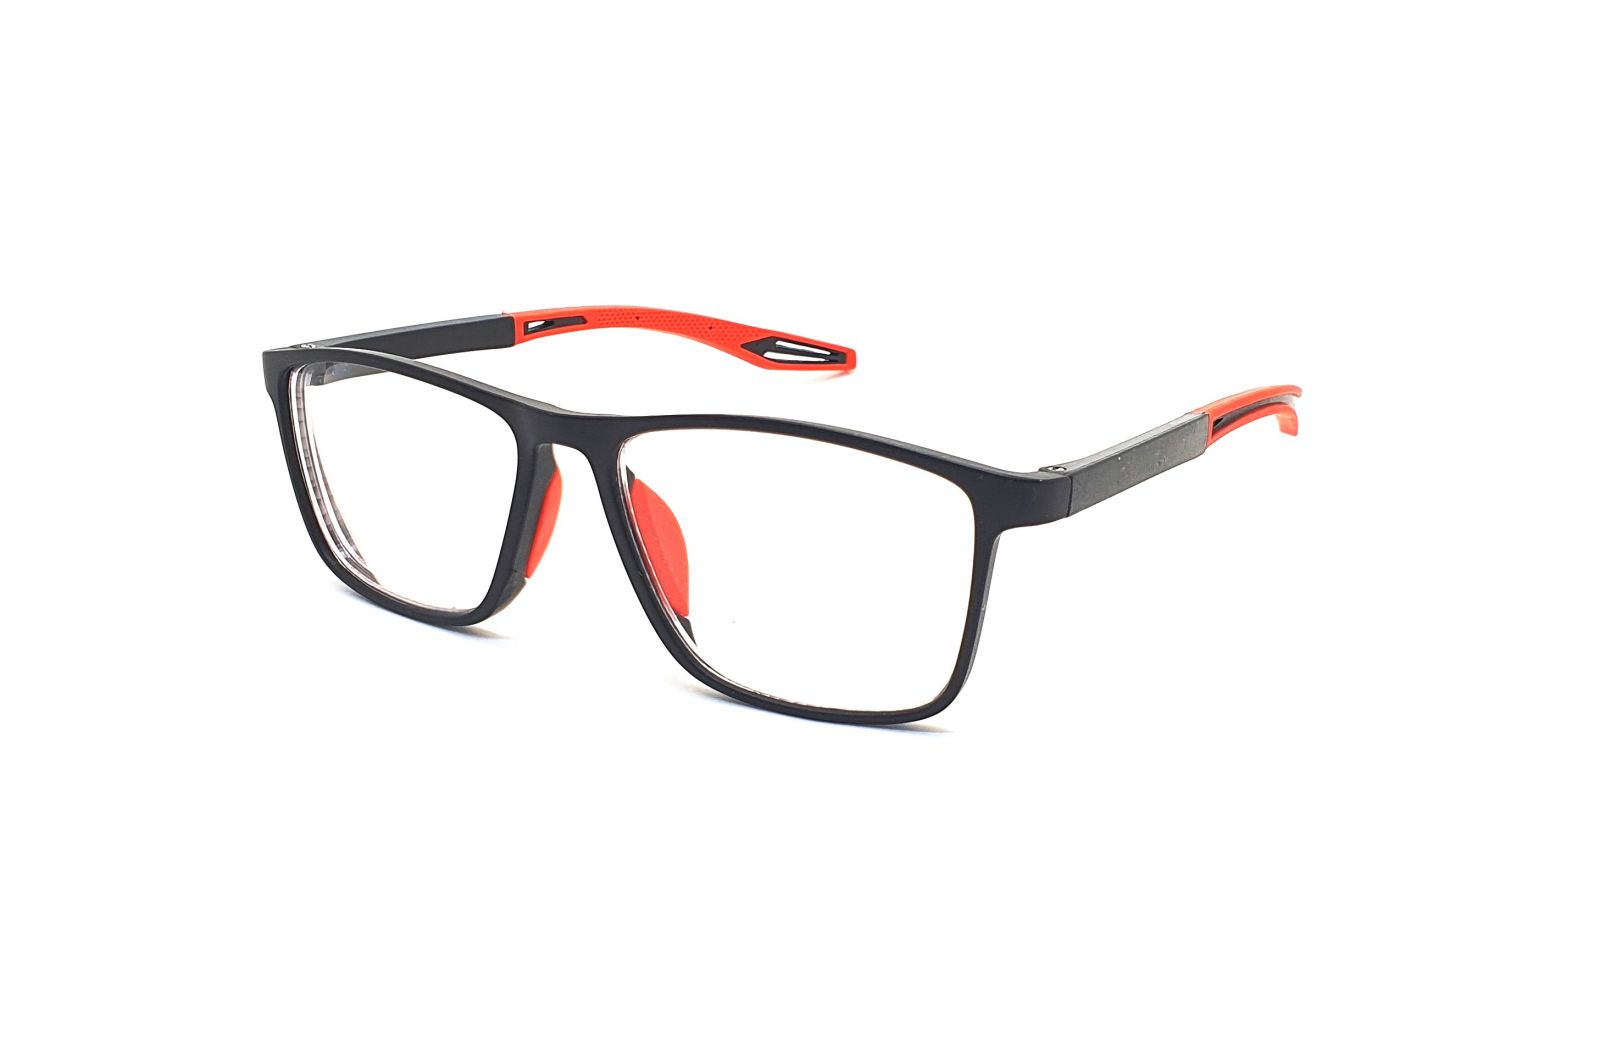 Samozabarvovací dioptrické brýle F04 / -3,50 black/red